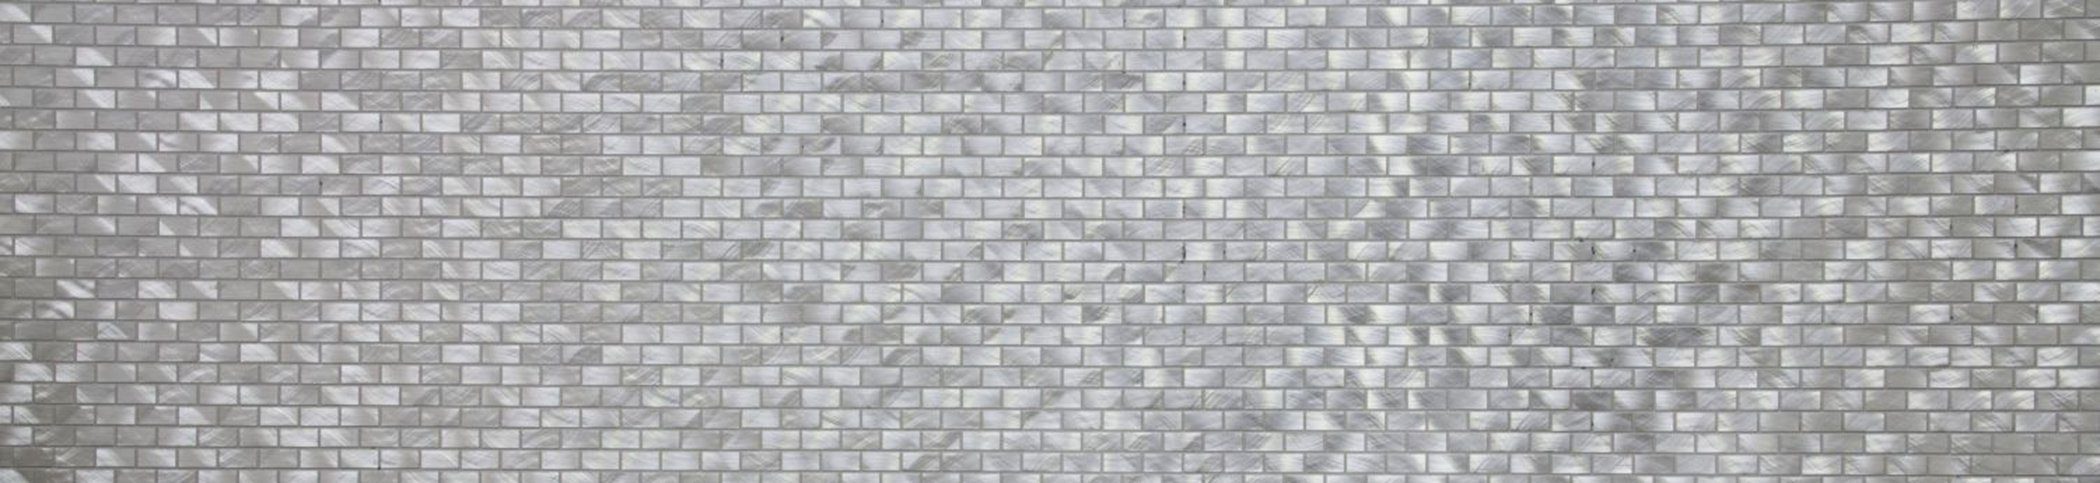 Küchenwand Fliese Mosaik Mosani Aluminium Fliesenspiegel silber Mosaikfliesen Brick